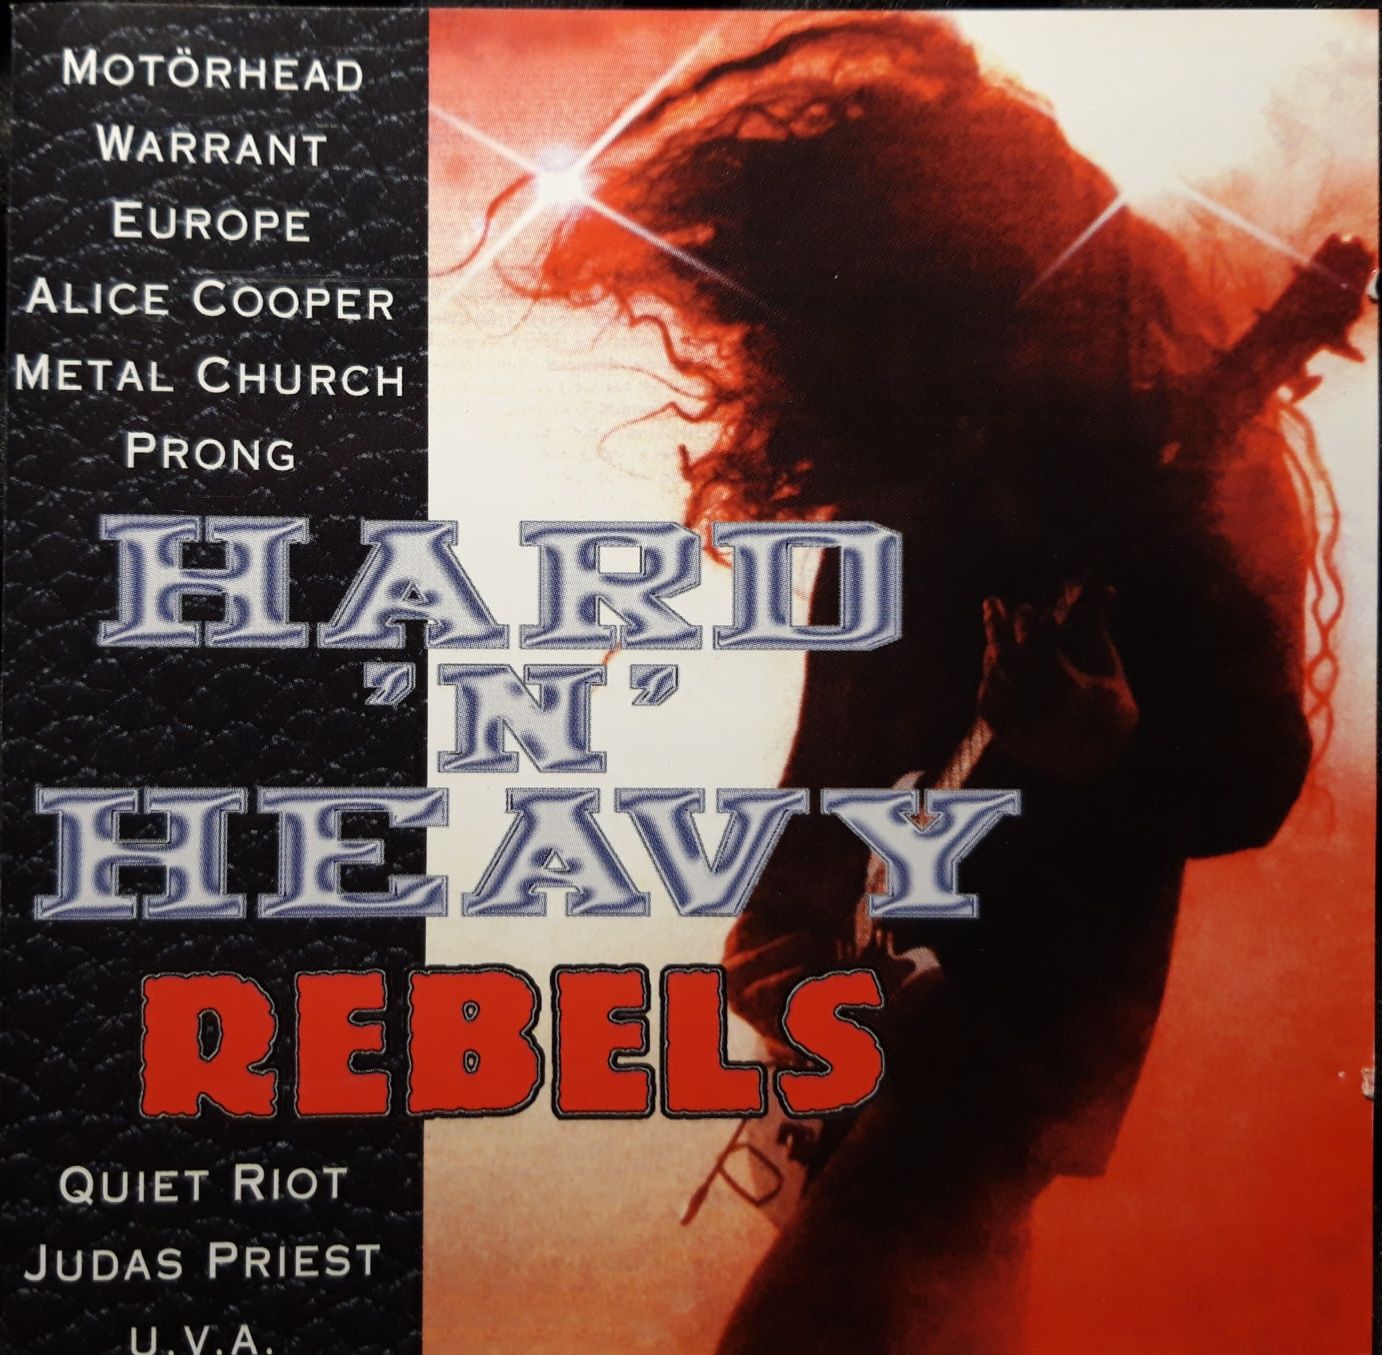 Hard 'N' Heavy Rebels (2xCD, 1994)